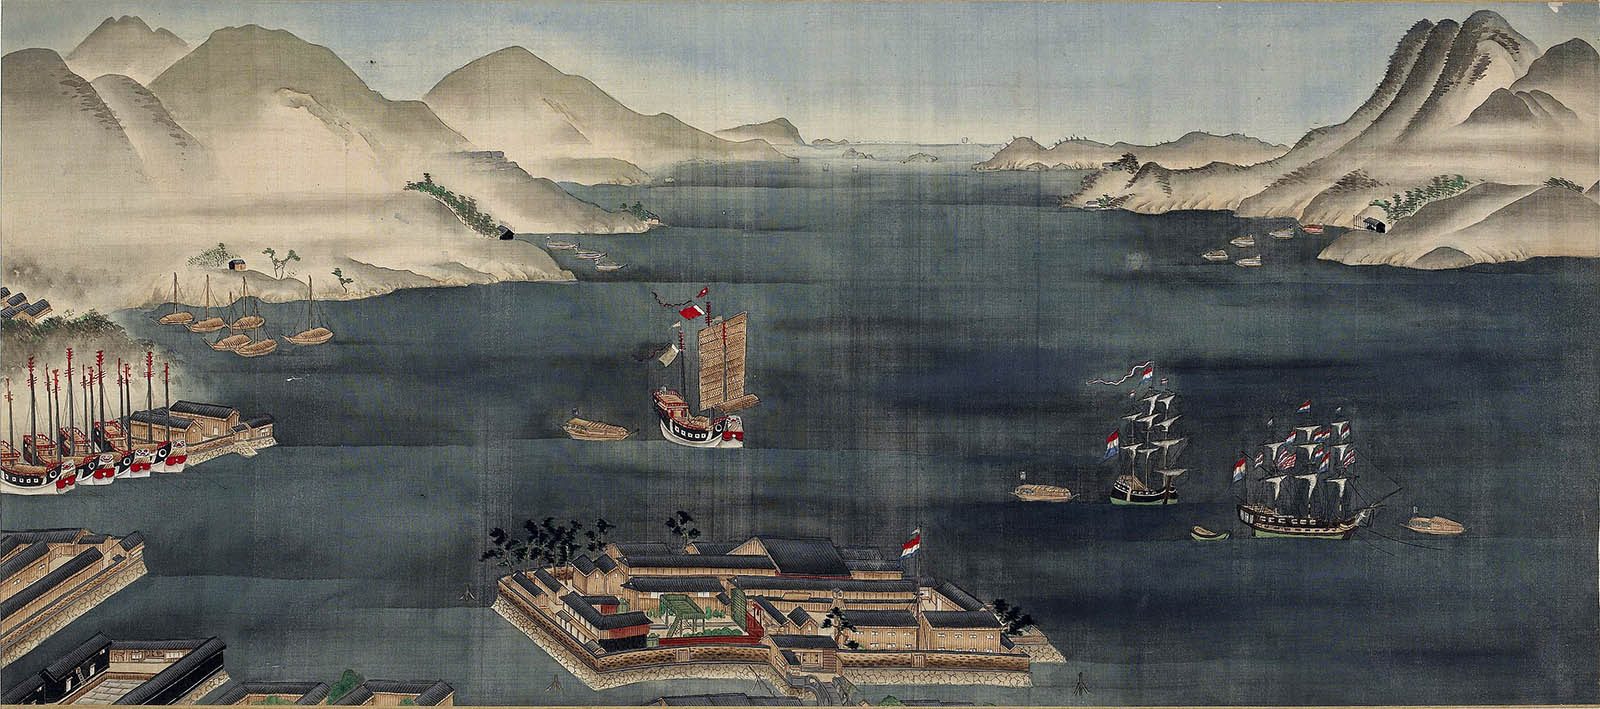 Vue de l'île enclave de Deshima, dans le port de Nagasaki, seul endroit où les navigateurs néerlandais pouvais débarquer pour faire commerce - Kawahara Keiga (川原慶賀) (1800-1820) - Domaine public, British Museum. 